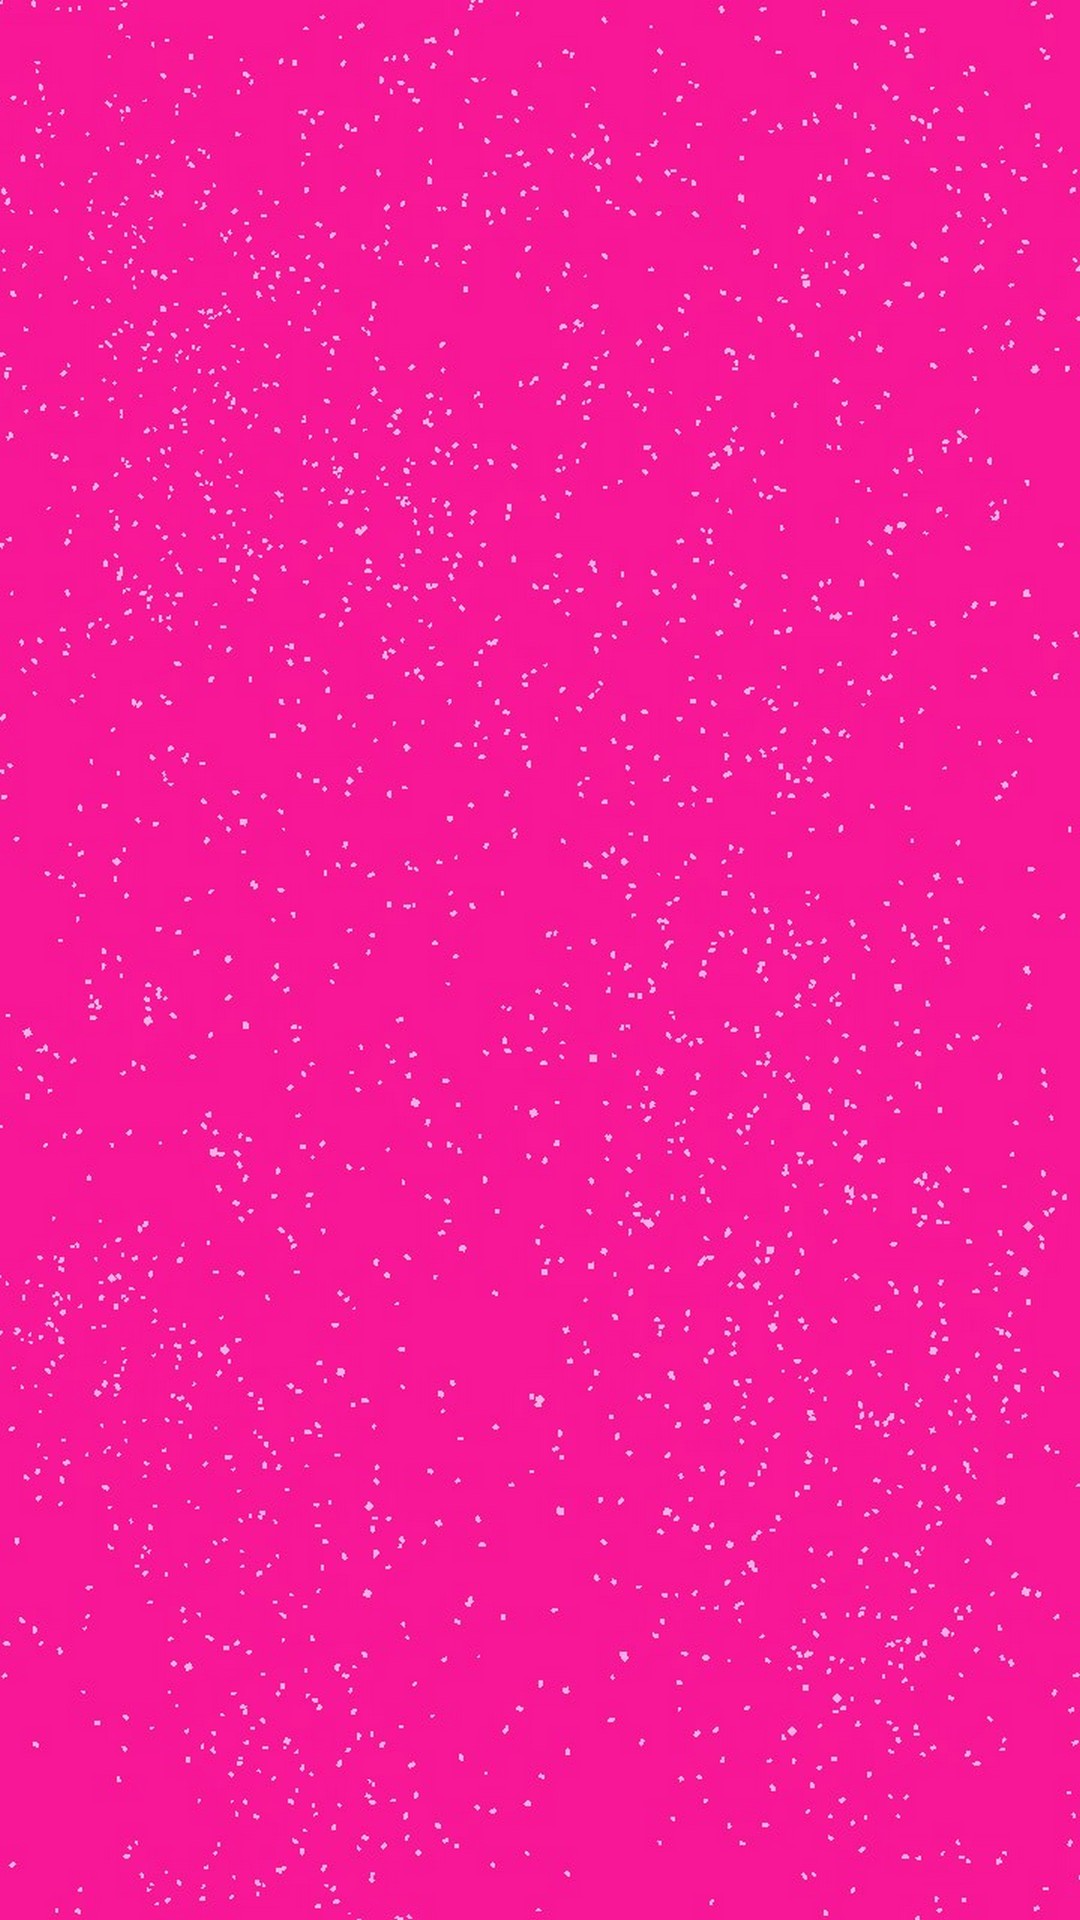 Pink Glitter iPhone Wallpaper resolution 1080x1920